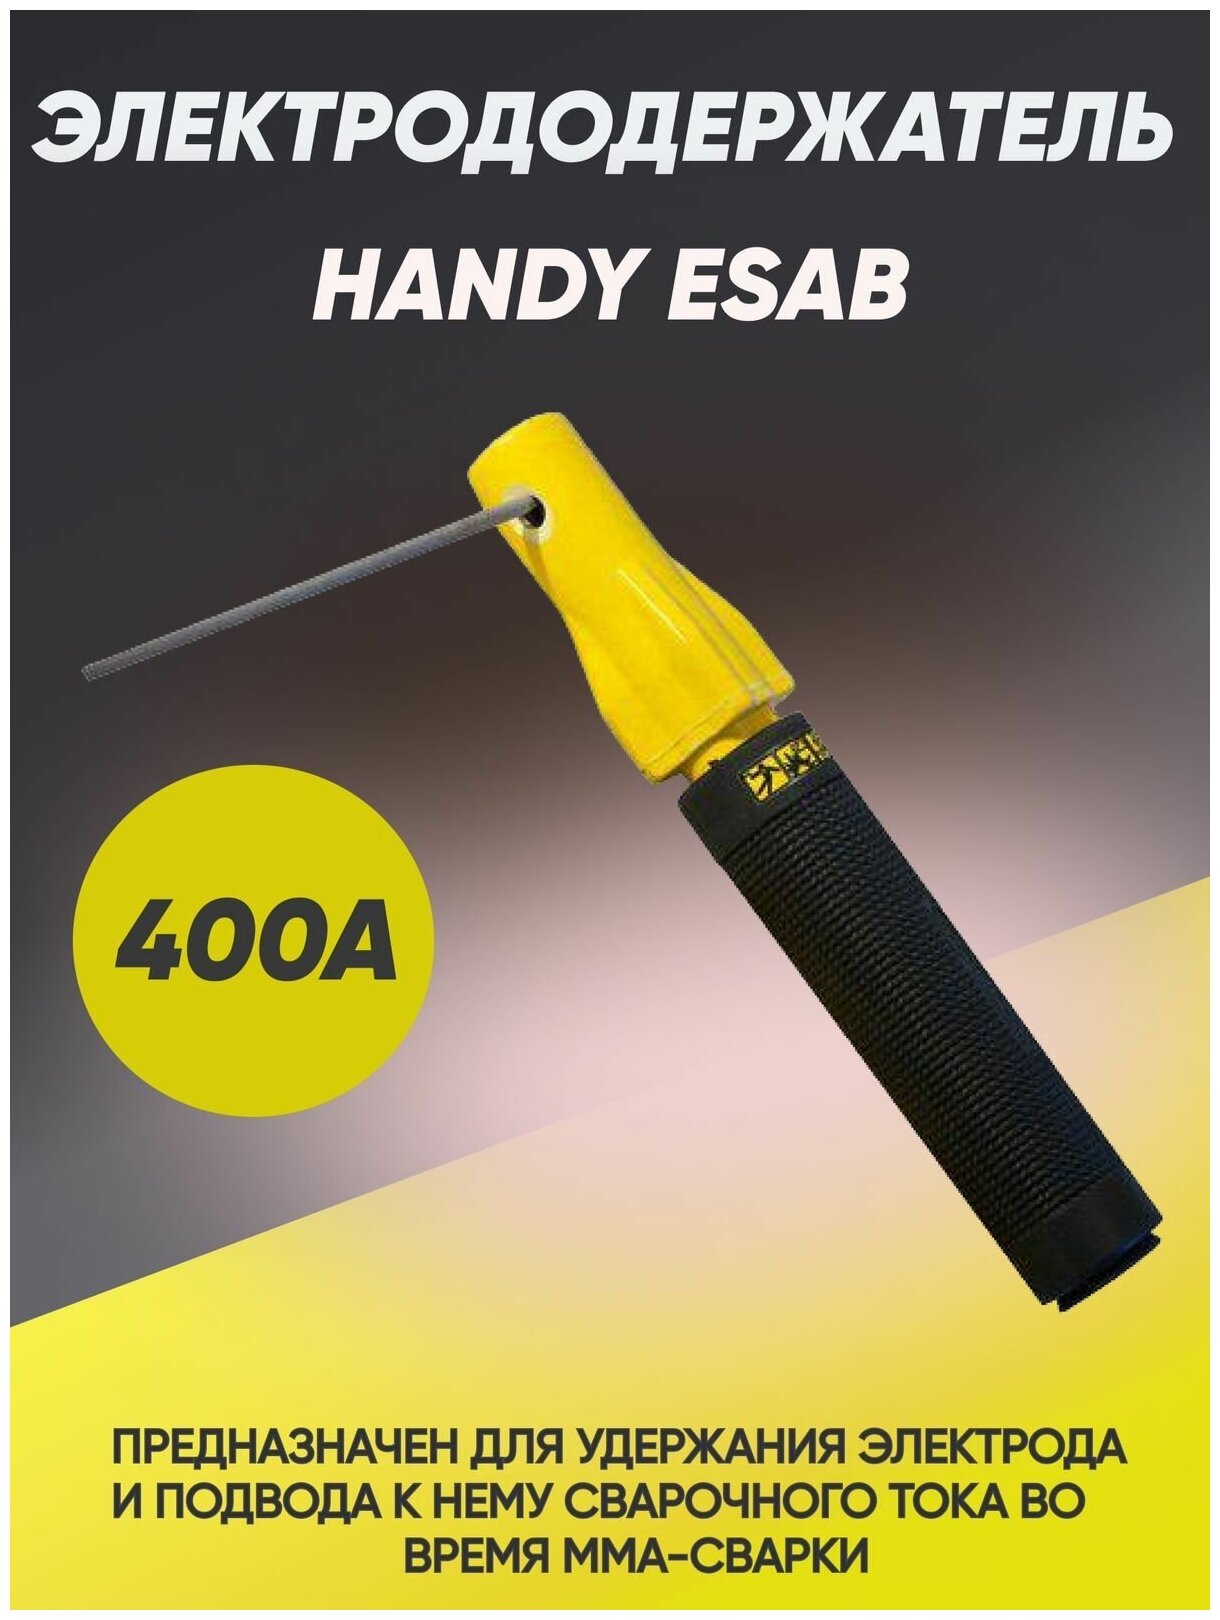 Электрододержатель Esab Handy, 400 А